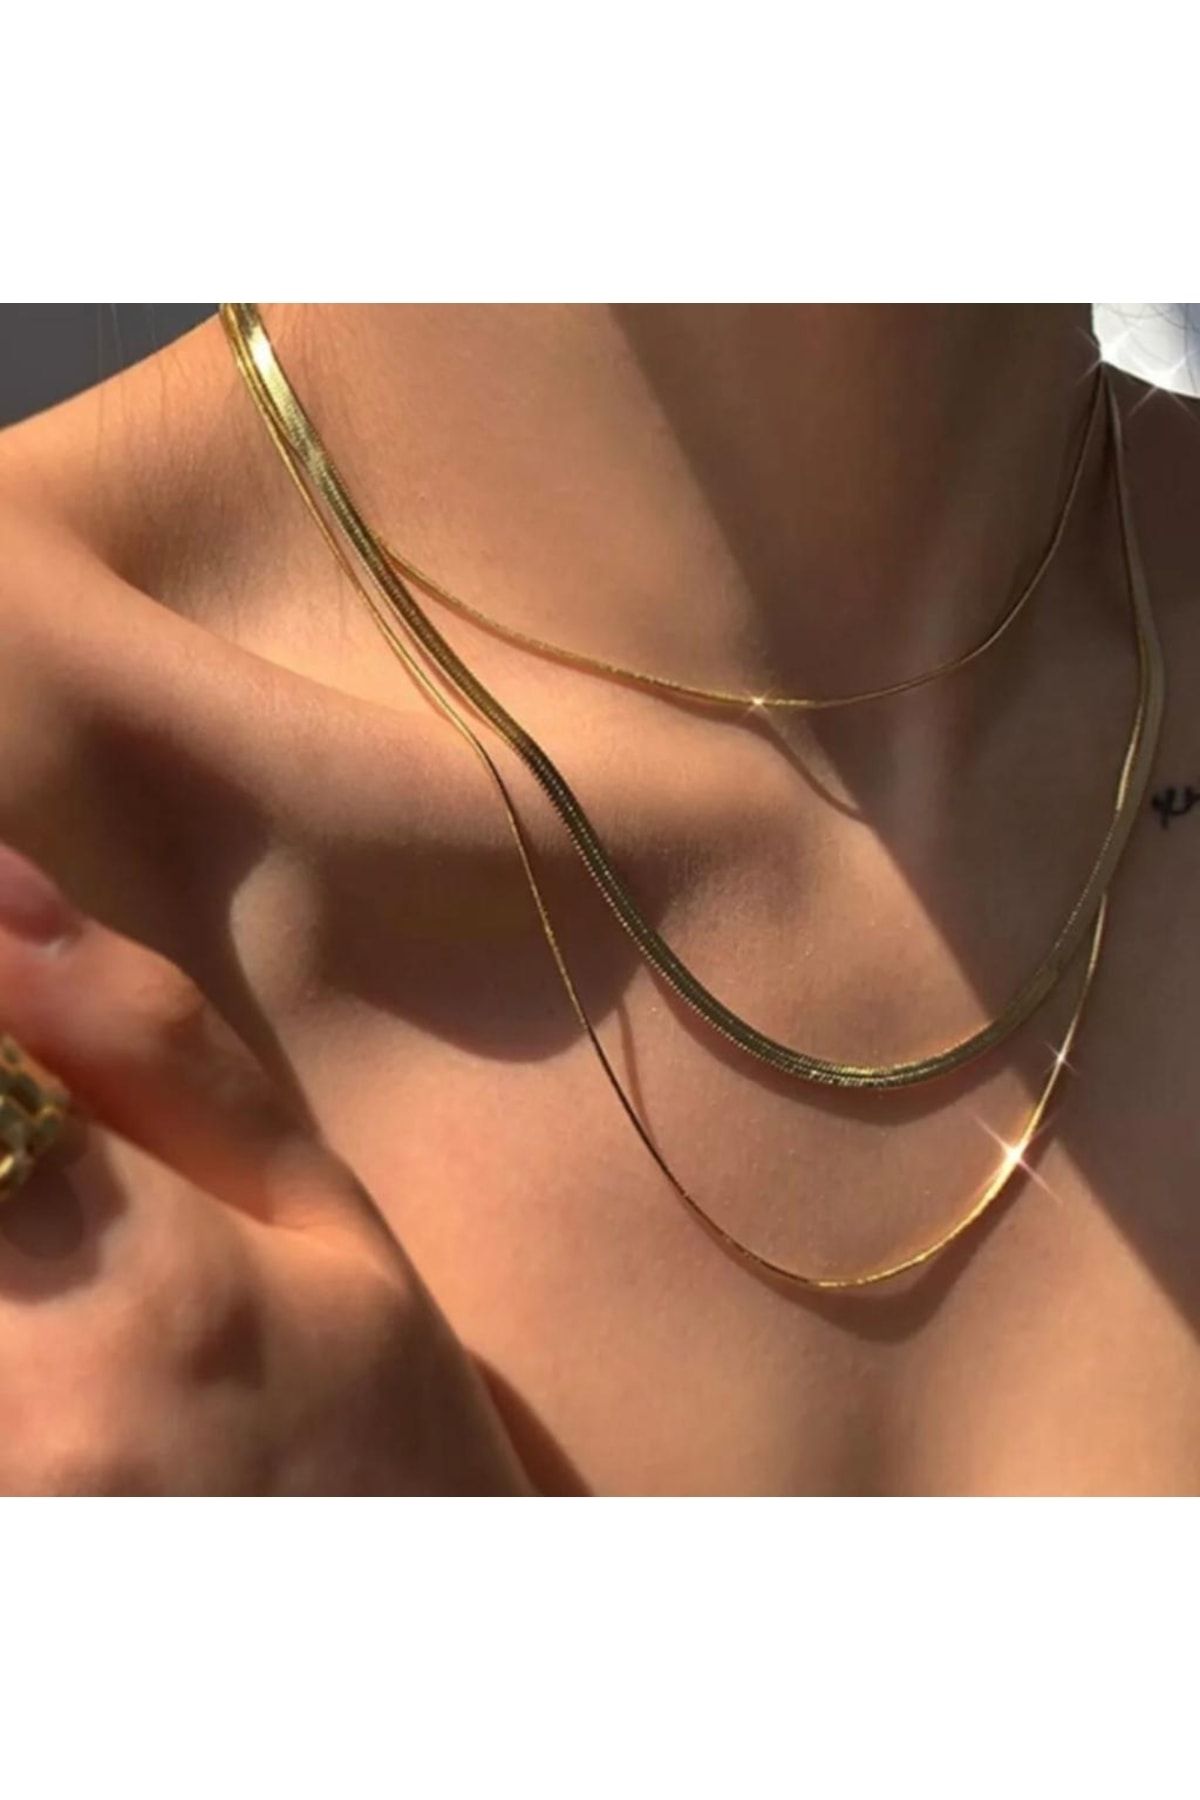 Jadenne İtalyan Ezme Snake 3 Lü Set Kadın Kolye Gold Çelik Üzeri Altın Kaplama 2 Sene Garanti Belgeli